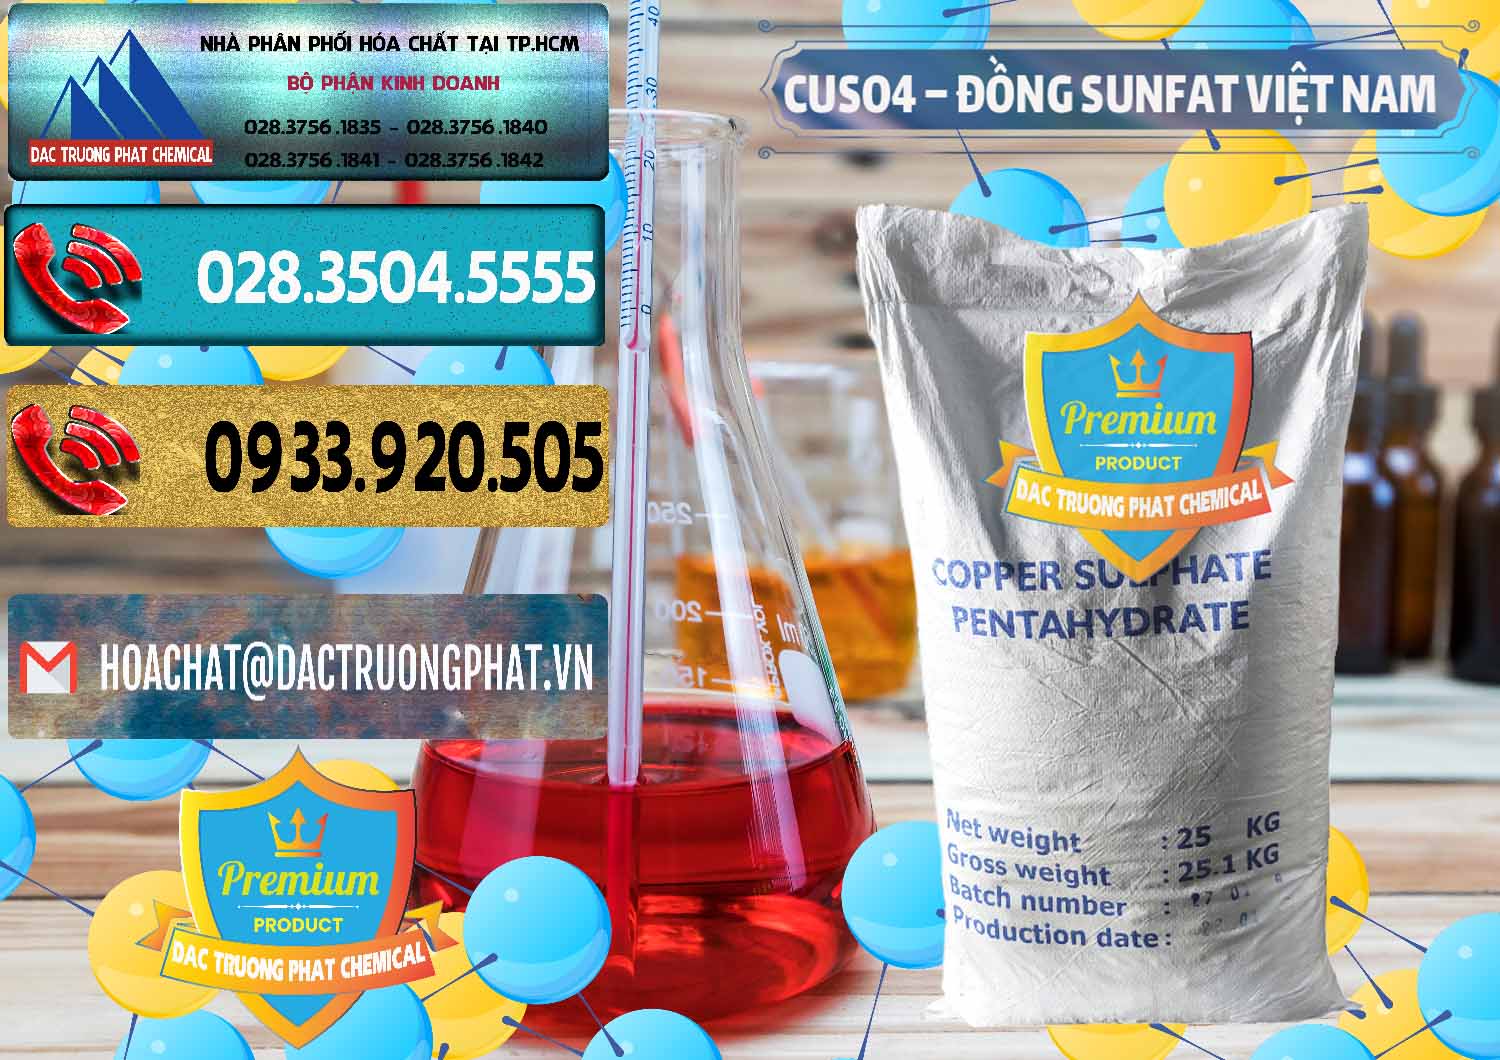 Công ty phân phối & cung ứng CuSO4 – Đồng Sunfat Dạng Bột Việt Nam - 0196 - Nơi chuyên cung cấp và bán hóa chất tại TP.HCM - hoachatdetnhuom.com